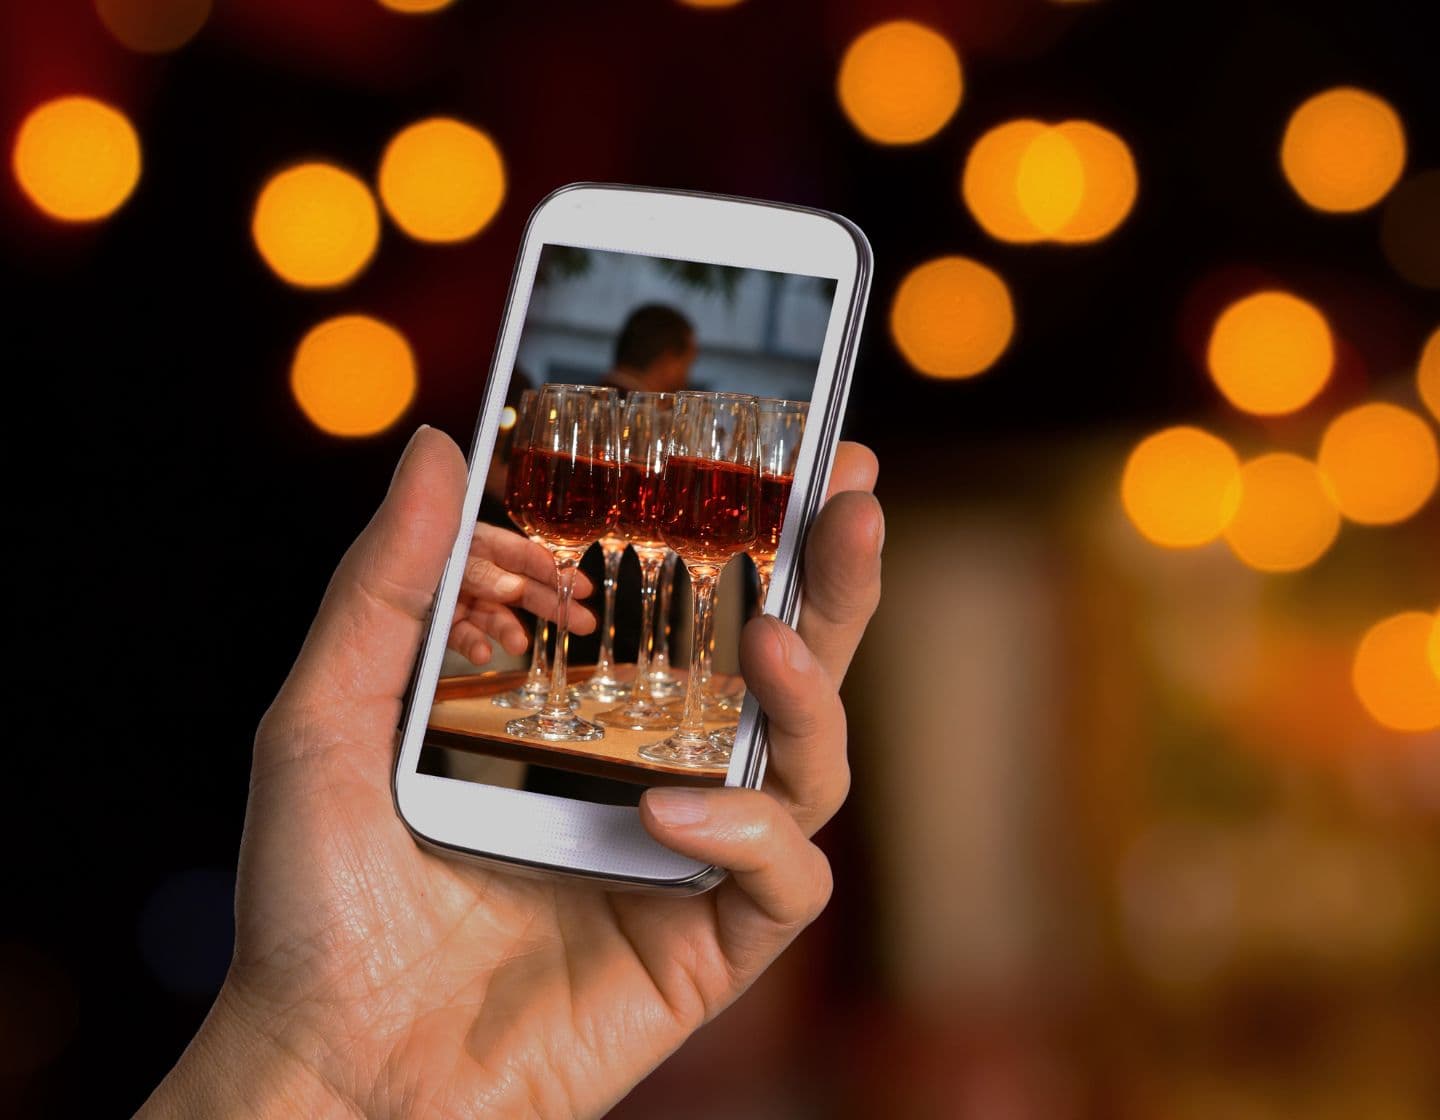  Mano sosteniendo un teléfono con una foto de copas de vino.